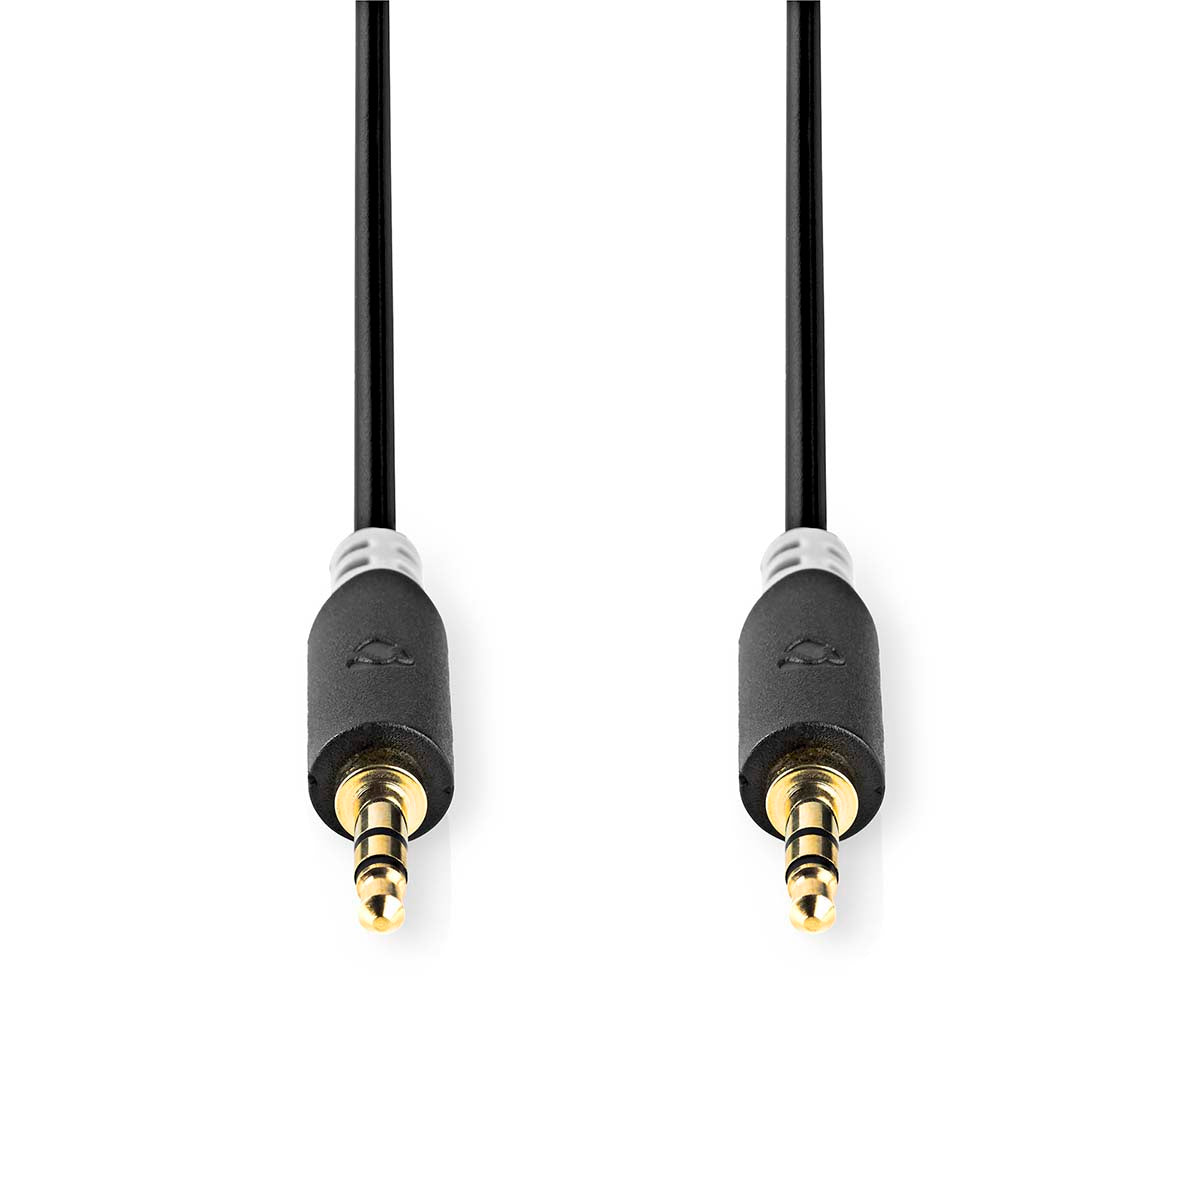 Stereo-Audiokabel | 3.5 mm Stecker | 3.5 mm Stecker | Vergoldet | 10.0 m | Rund | Anthrazit | Box